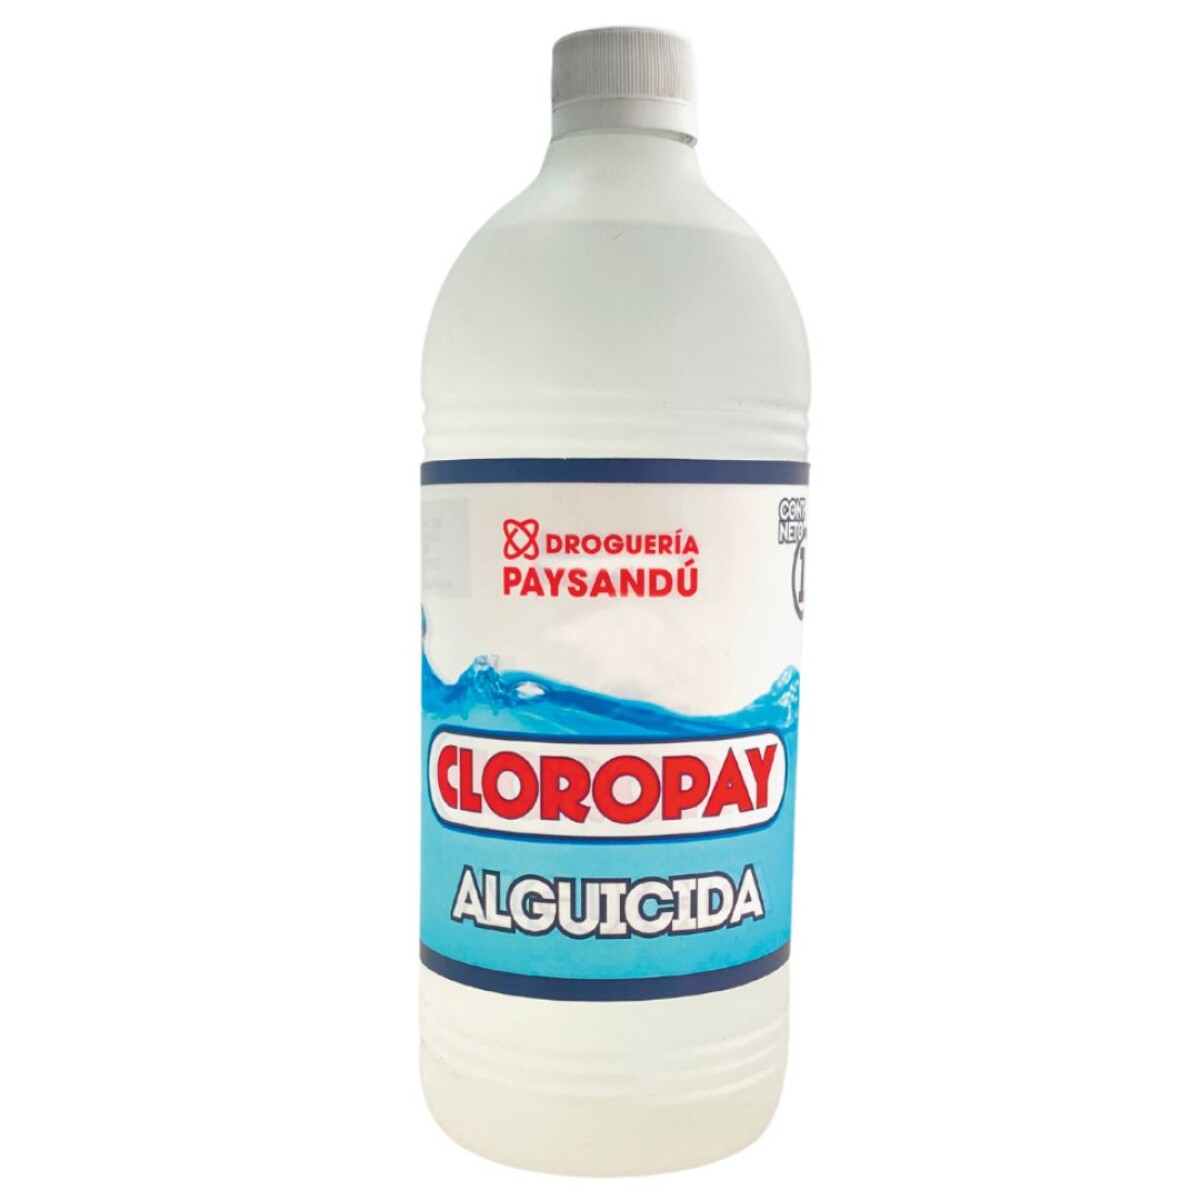 Cloropay Alguicida - 1 L 